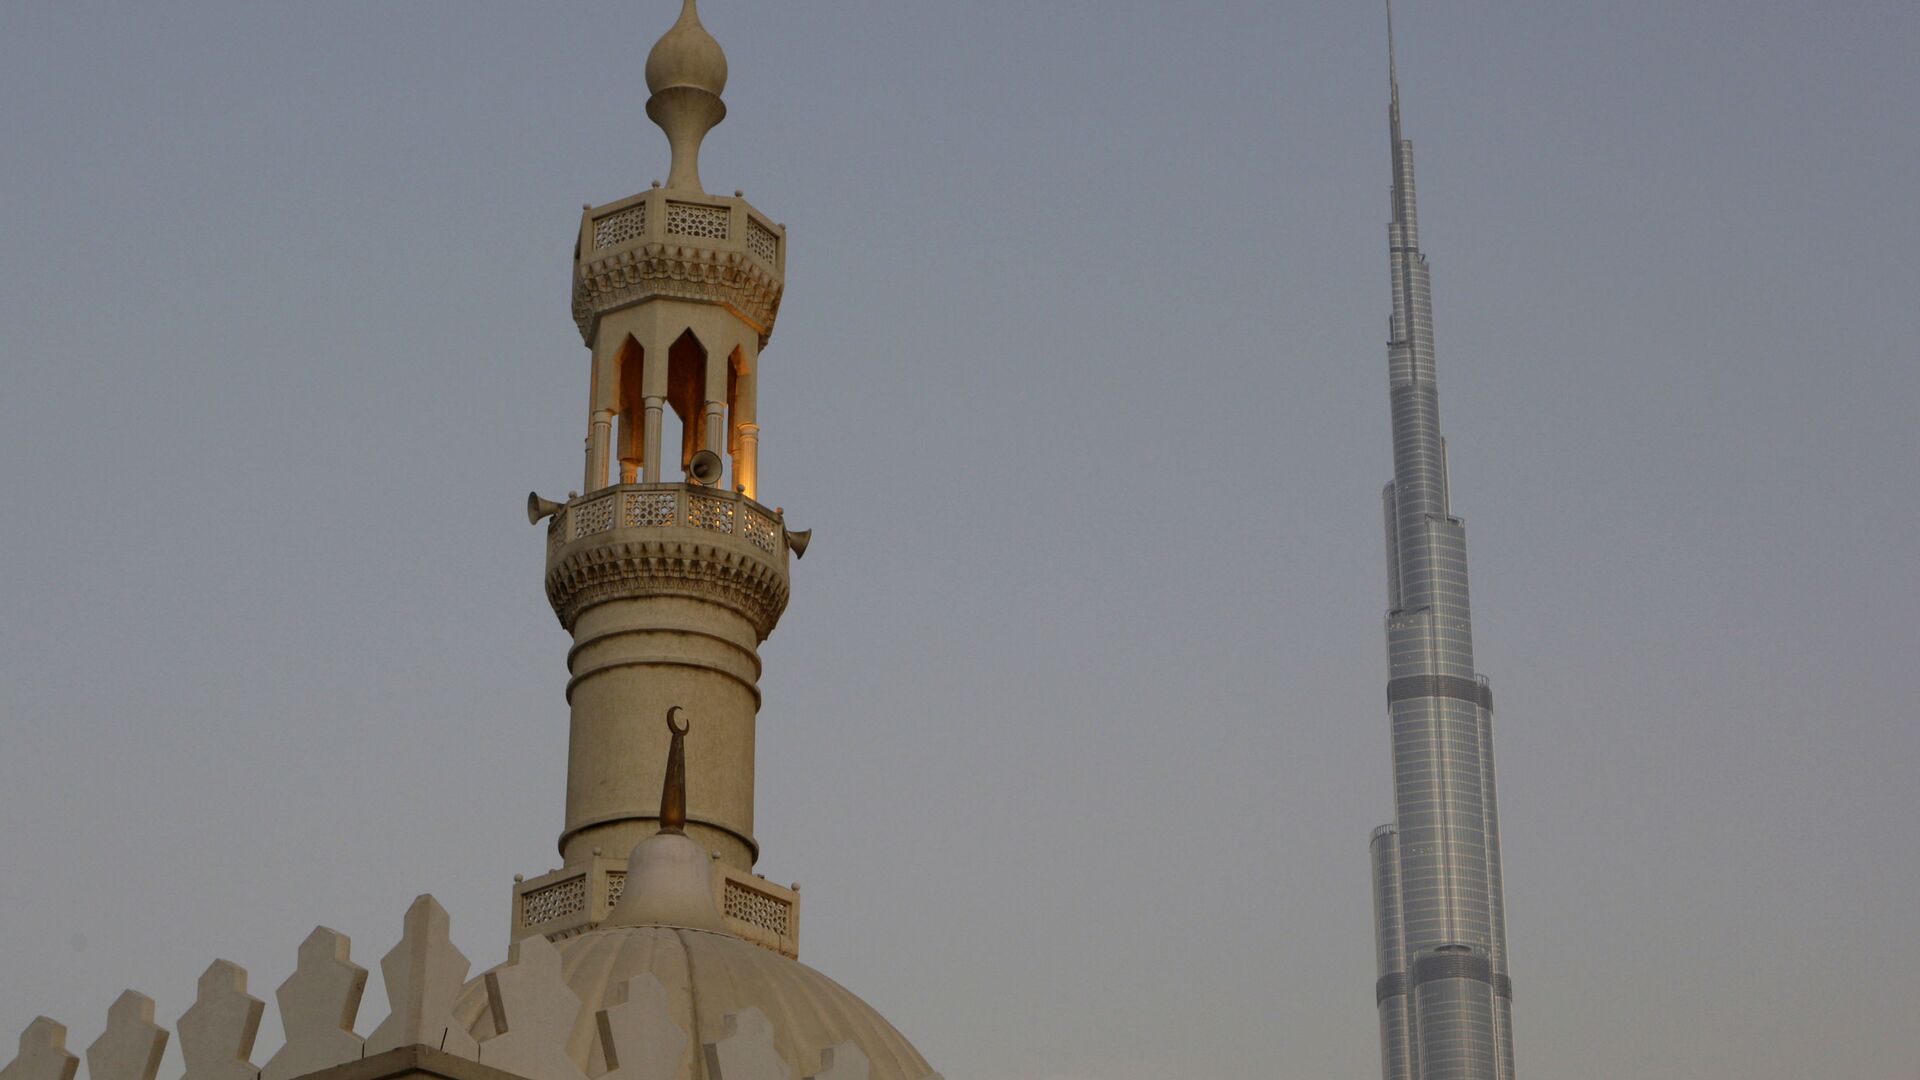 Самая высокая башня в мире, Бурдж-Халифа, видна за минаретом в Дубае - Sputnik Тоҷикистон, 1920, 13.03.2022